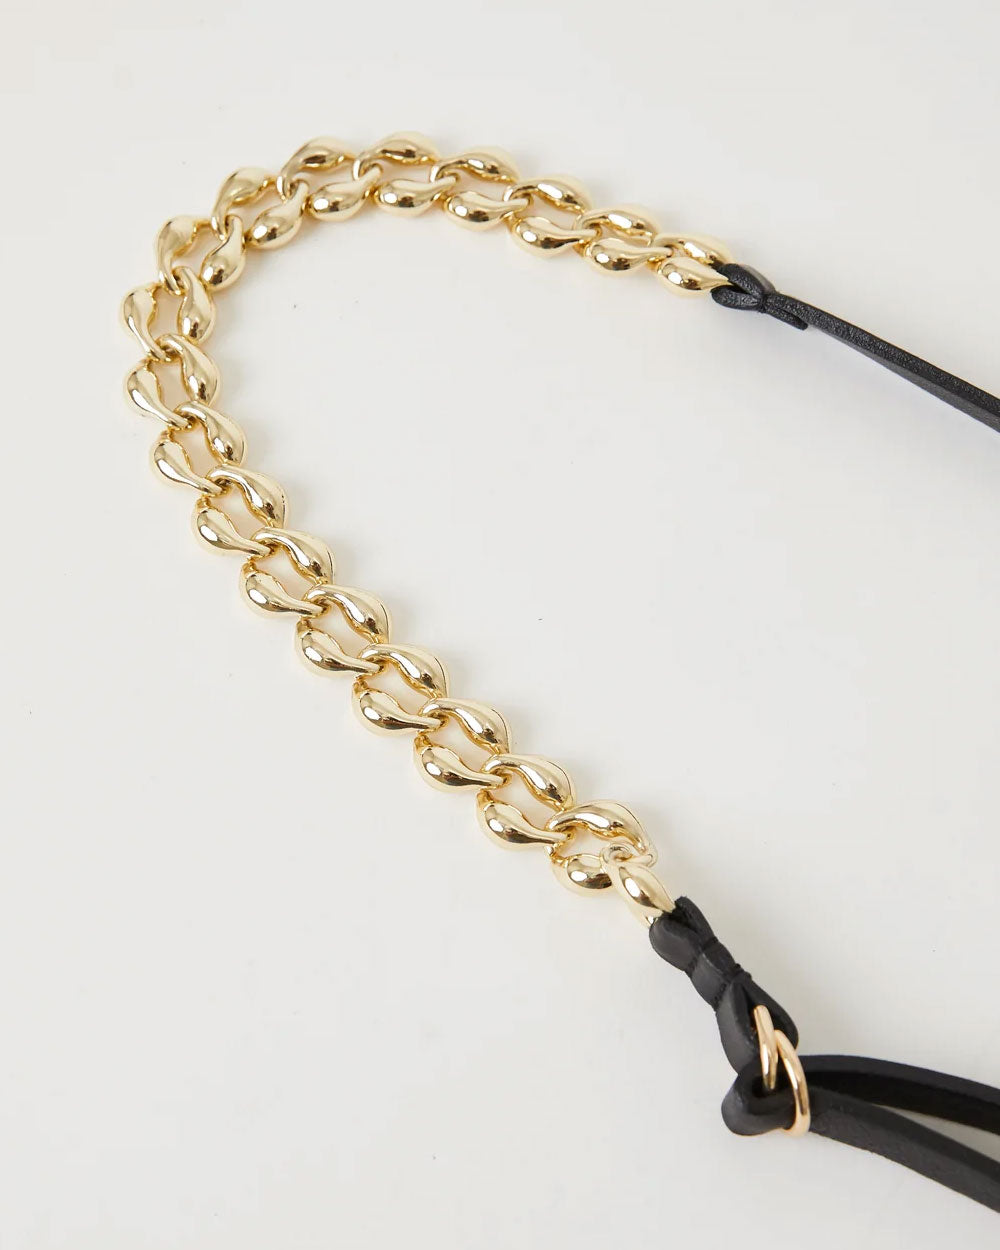 Lili Chain Leather Belt